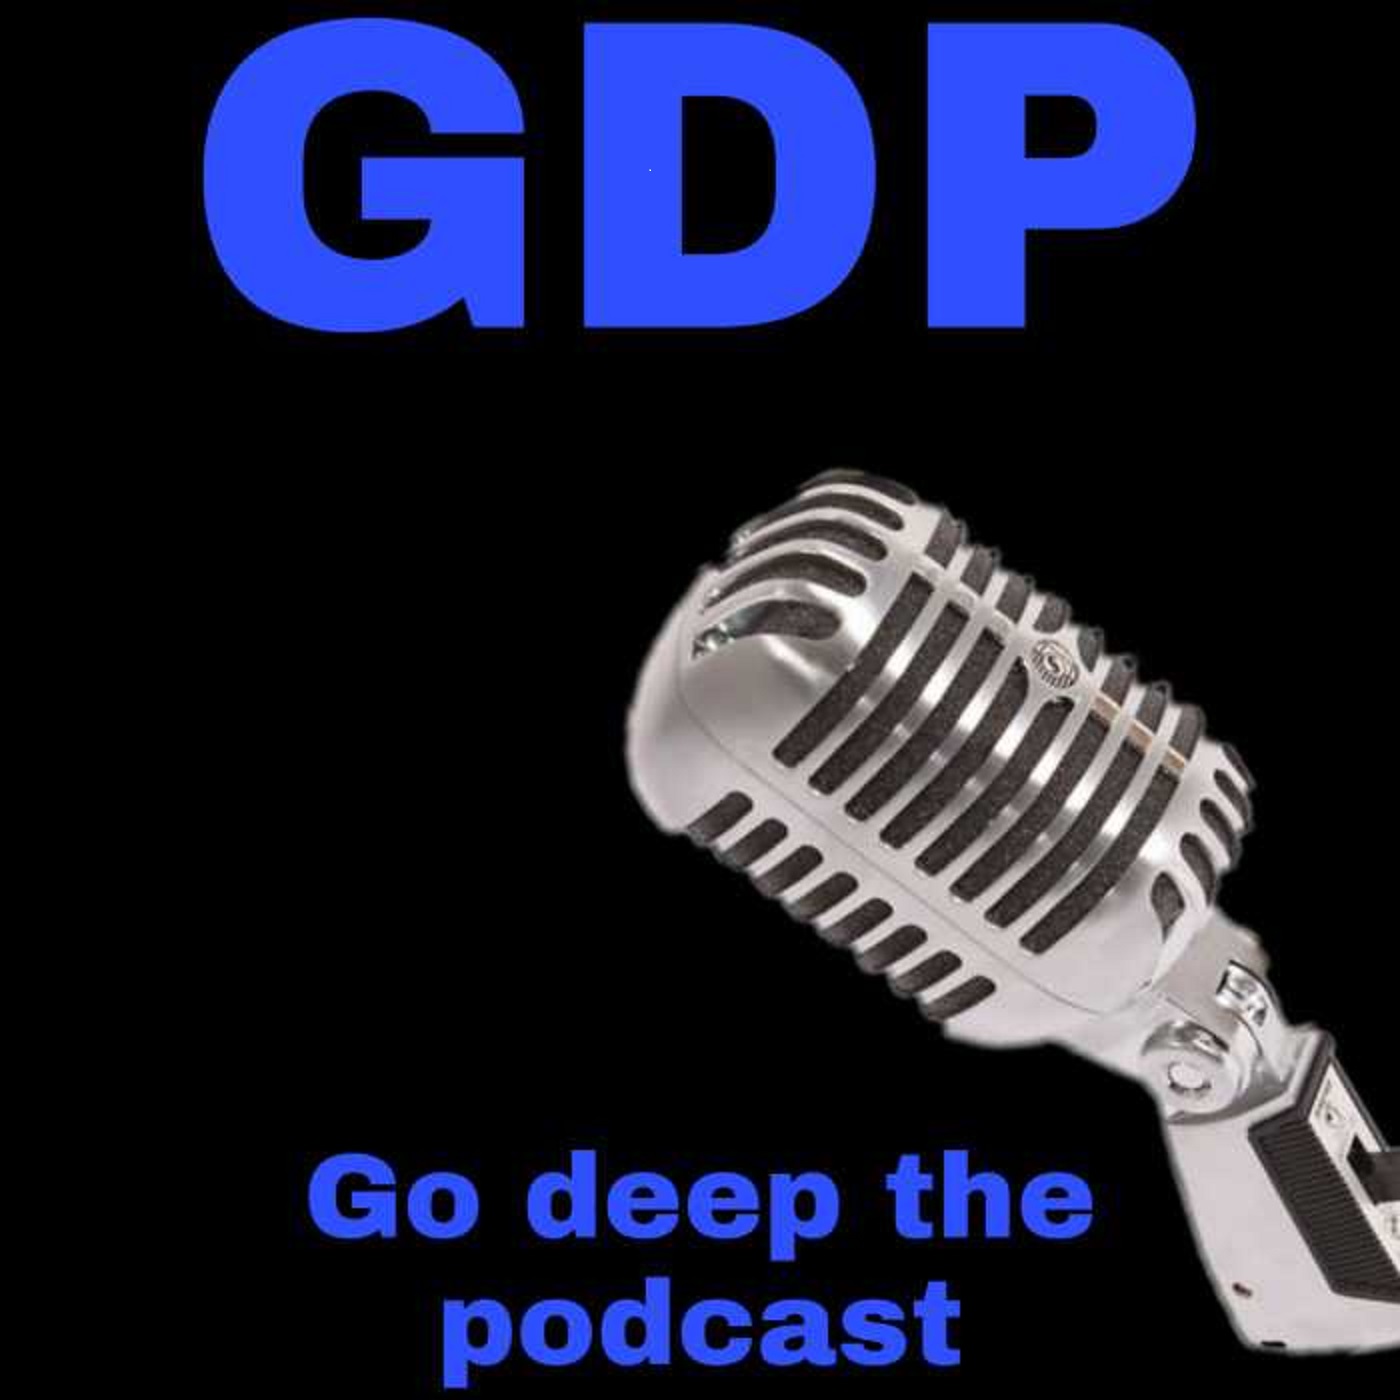 Go Deep the podcast (GDP)